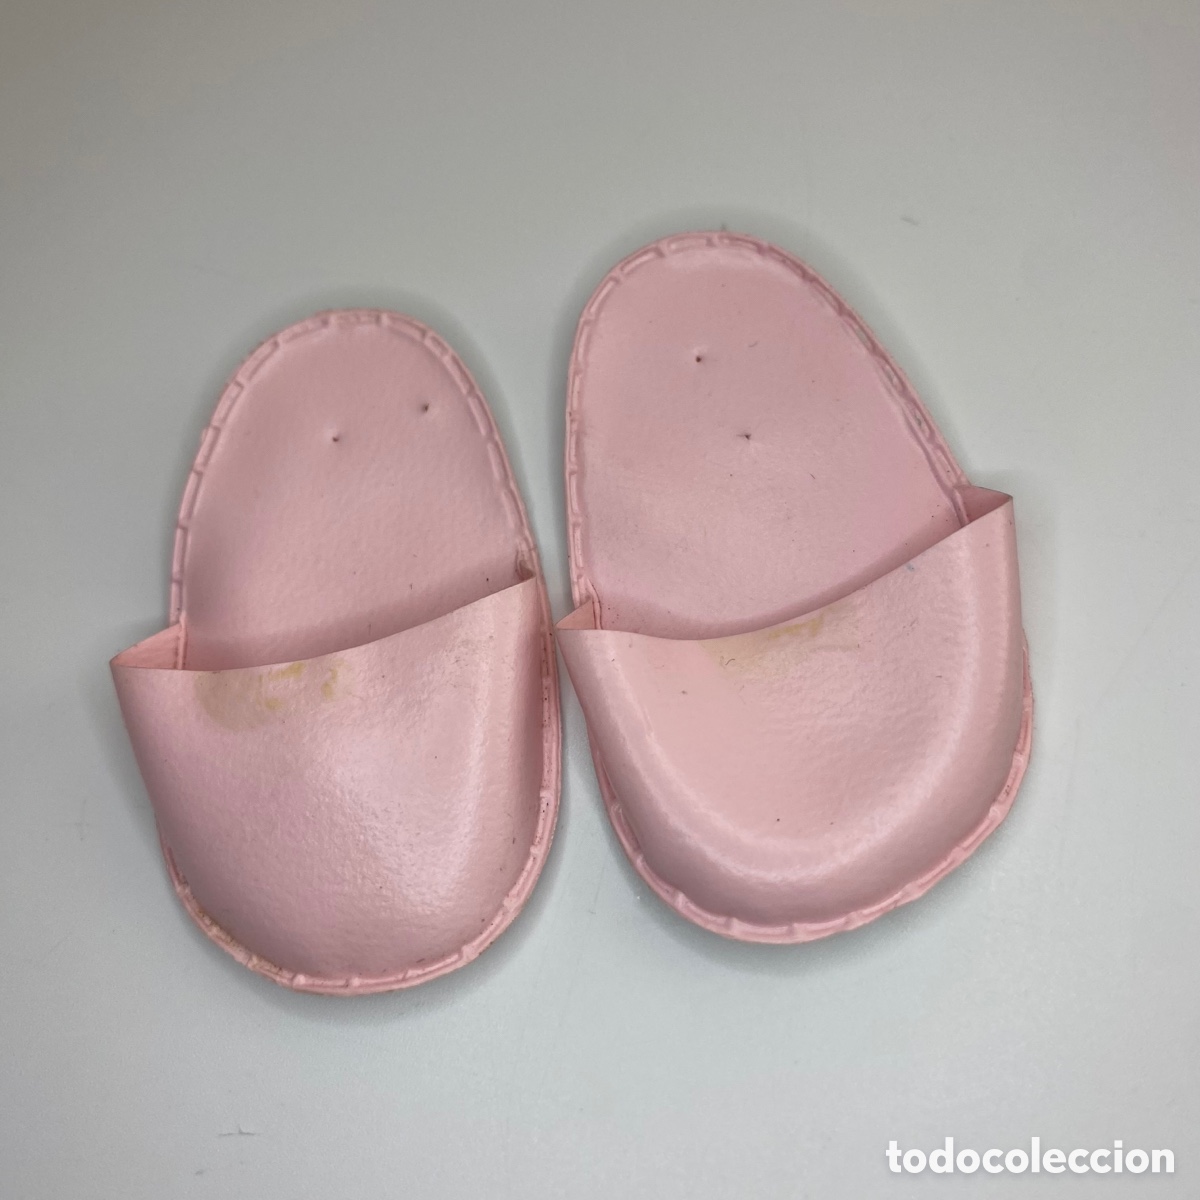 zapatillas andar por casa rosas de nancy origin - Compra venta en  todocoleccion